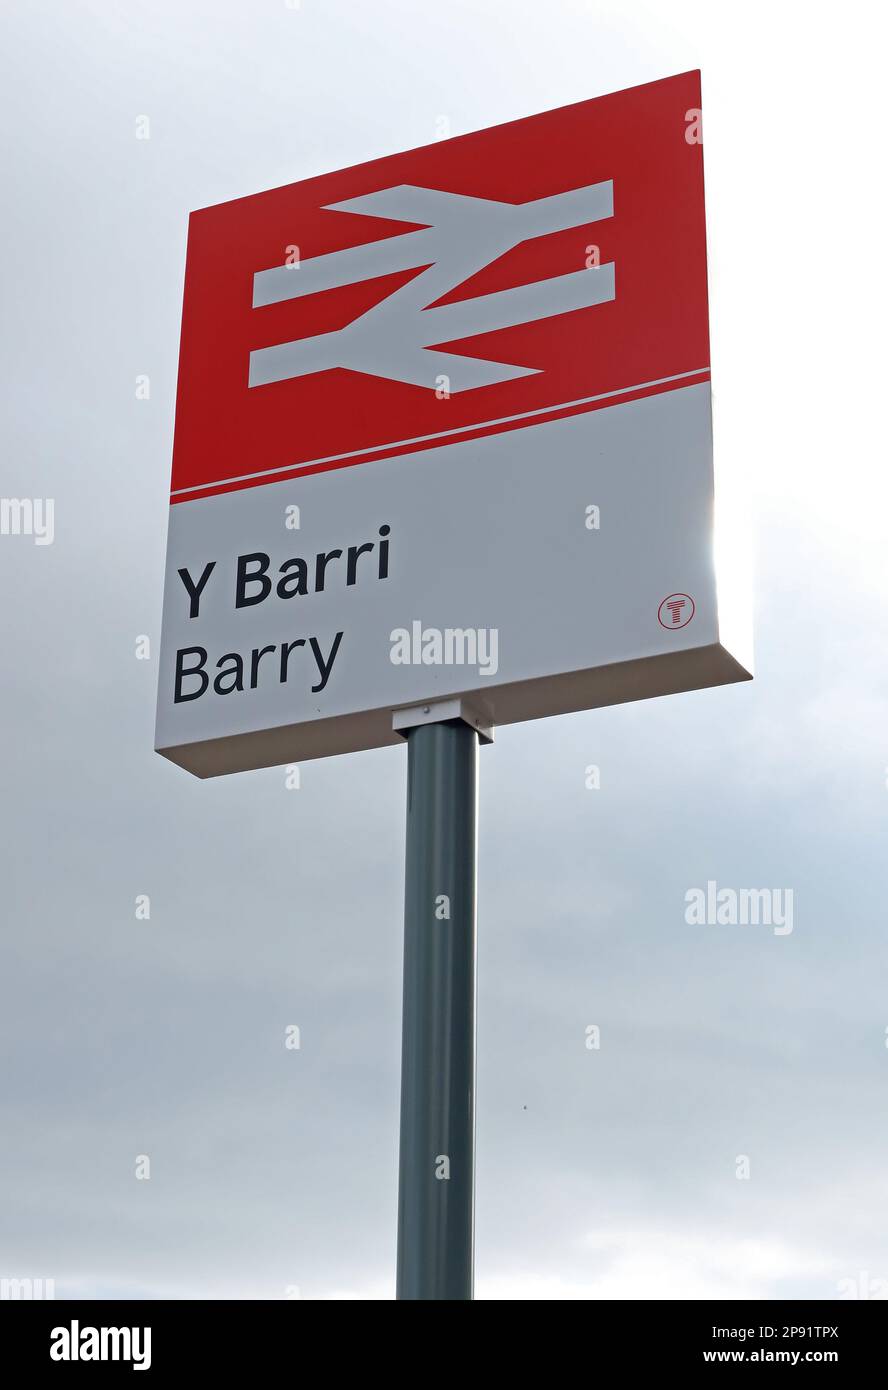 Gare de Barry, Broad Street, (y Barri), Vale de Glamourgan, pays de Galles du Sud, Cymru, Royaume-Uni Banque D'Images